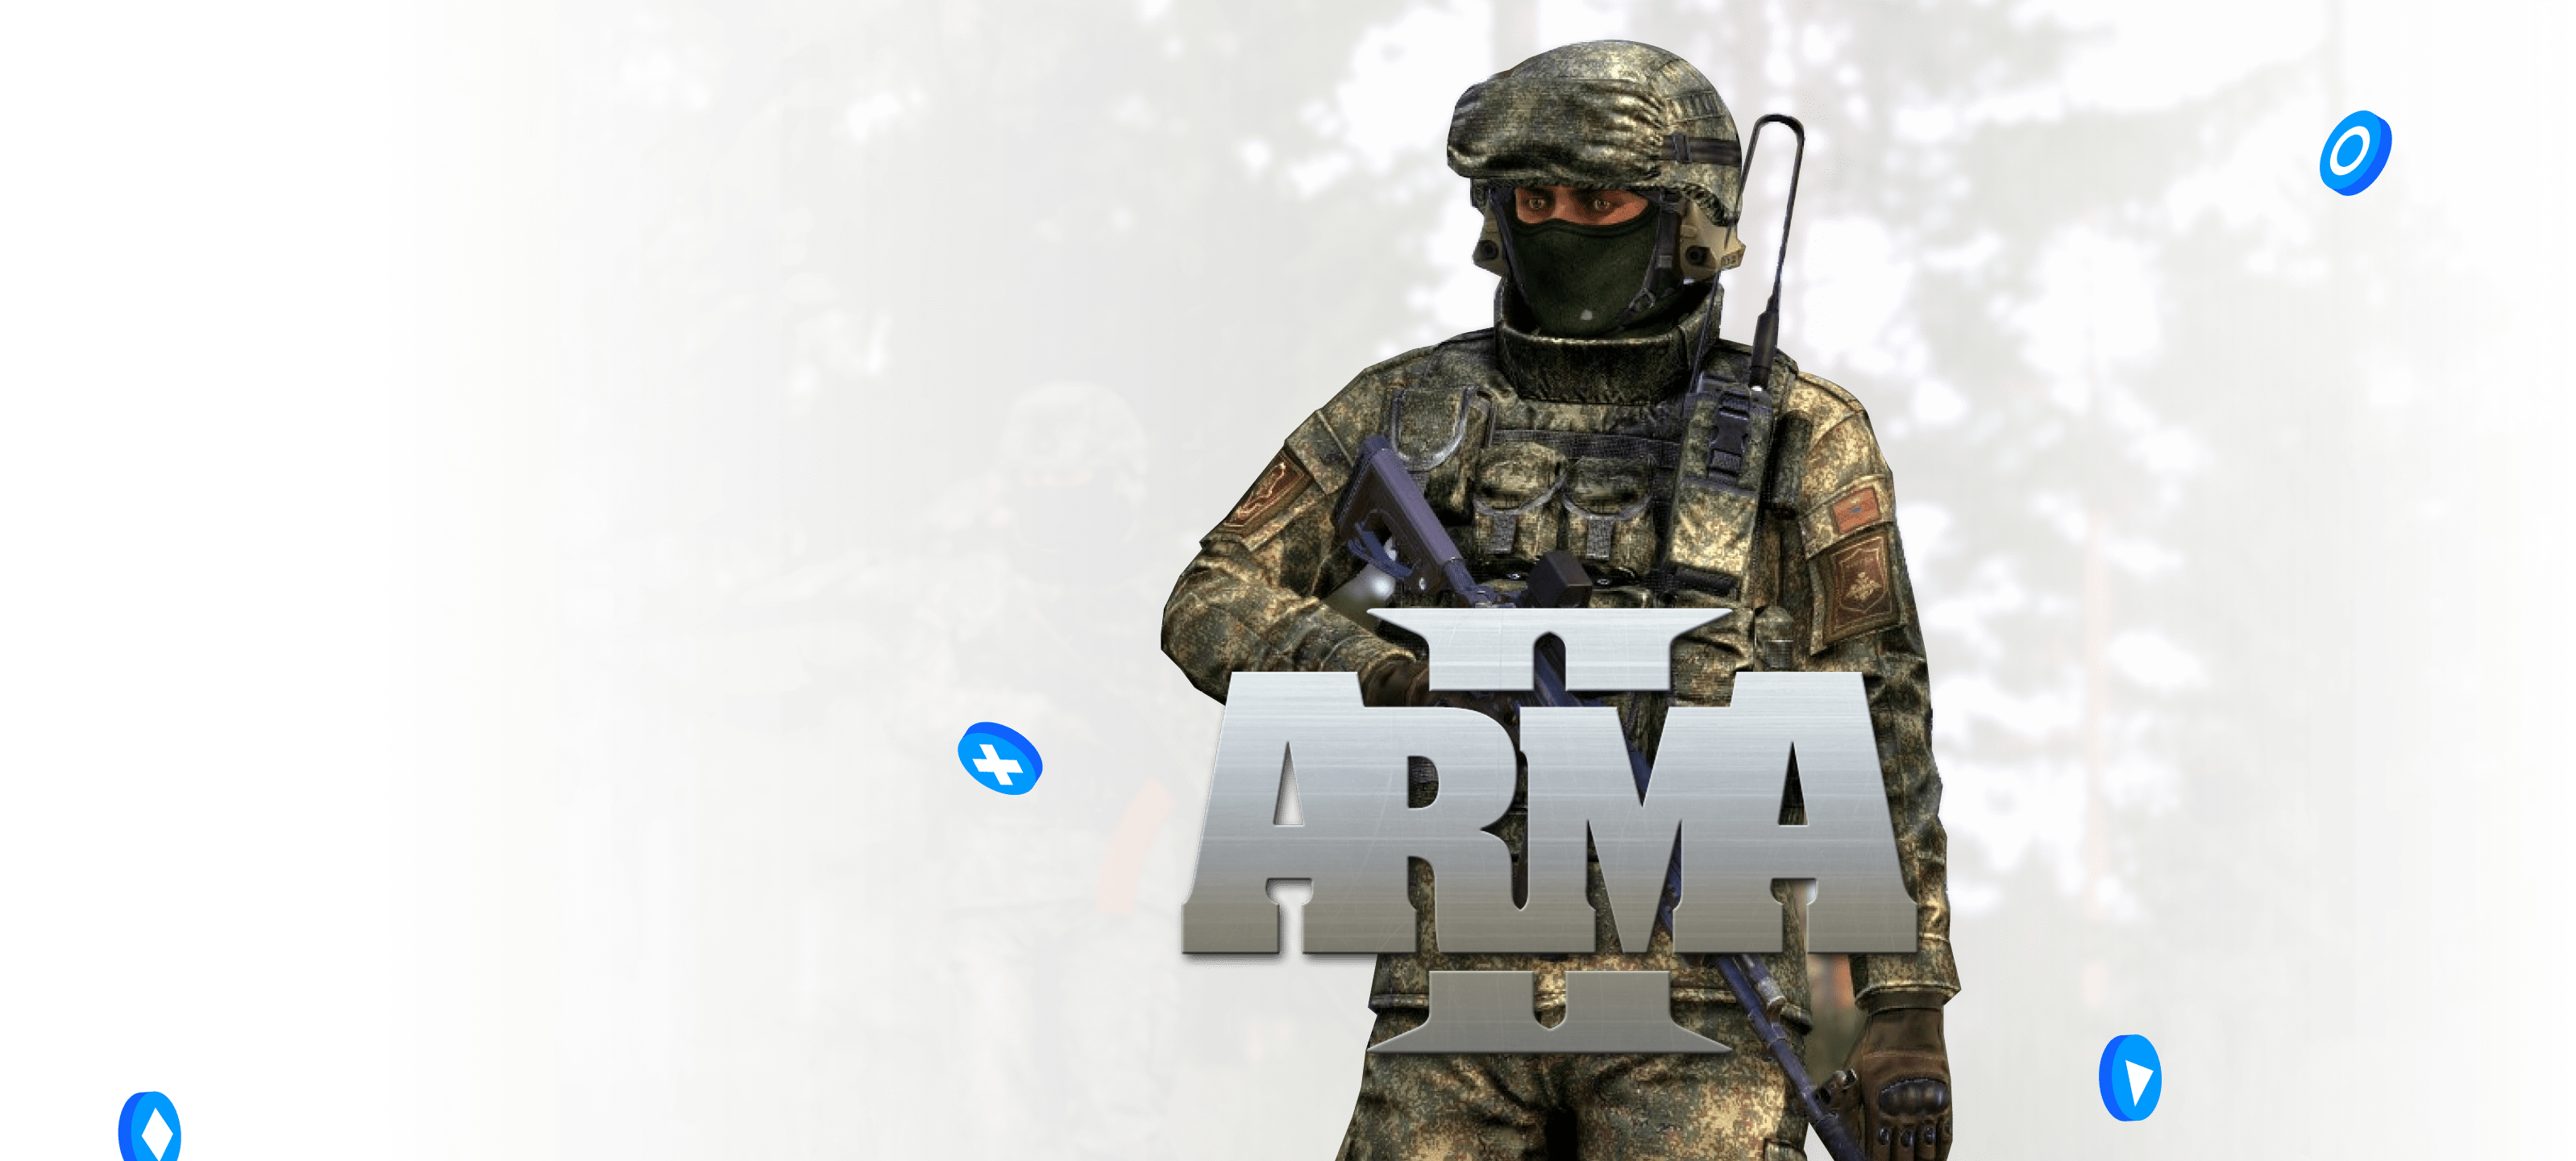 Arma 3 Server Hosting | Intense Militære Slag - Premium Arma III game server hosting